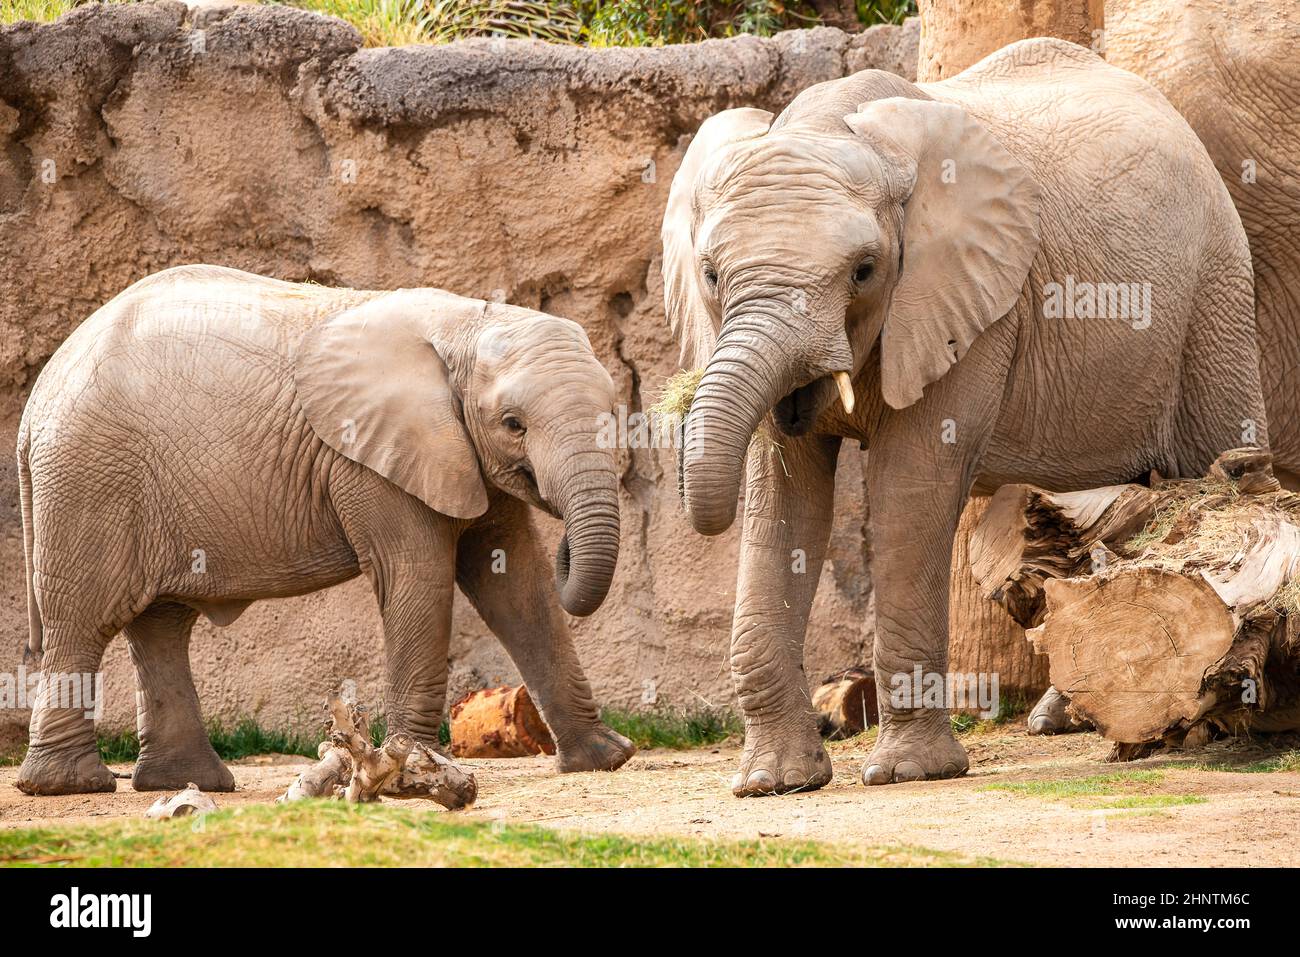 Elephants at the zoo Stock Photo